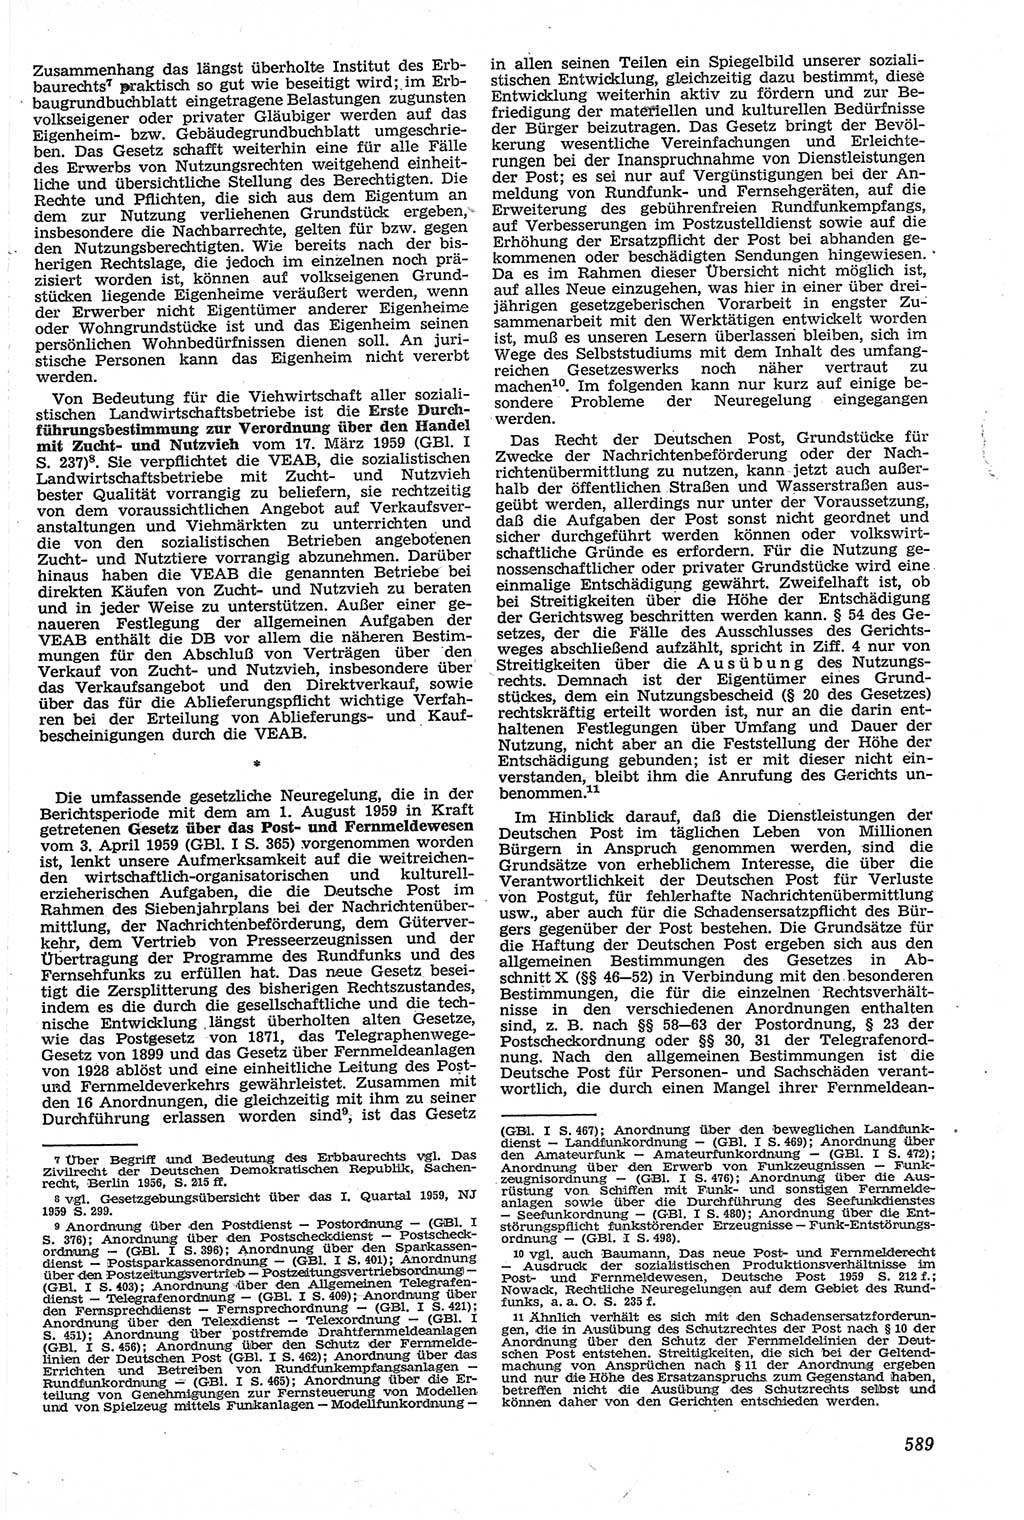 Neue Justiz (NJ), Zeitschrift für Recht und Rechtswissenschaft [Deutsche Demokratische Republik (DDR)], 13. Jahrgang 1959, Seite 589 (NJ DDR 1959, S. 589)